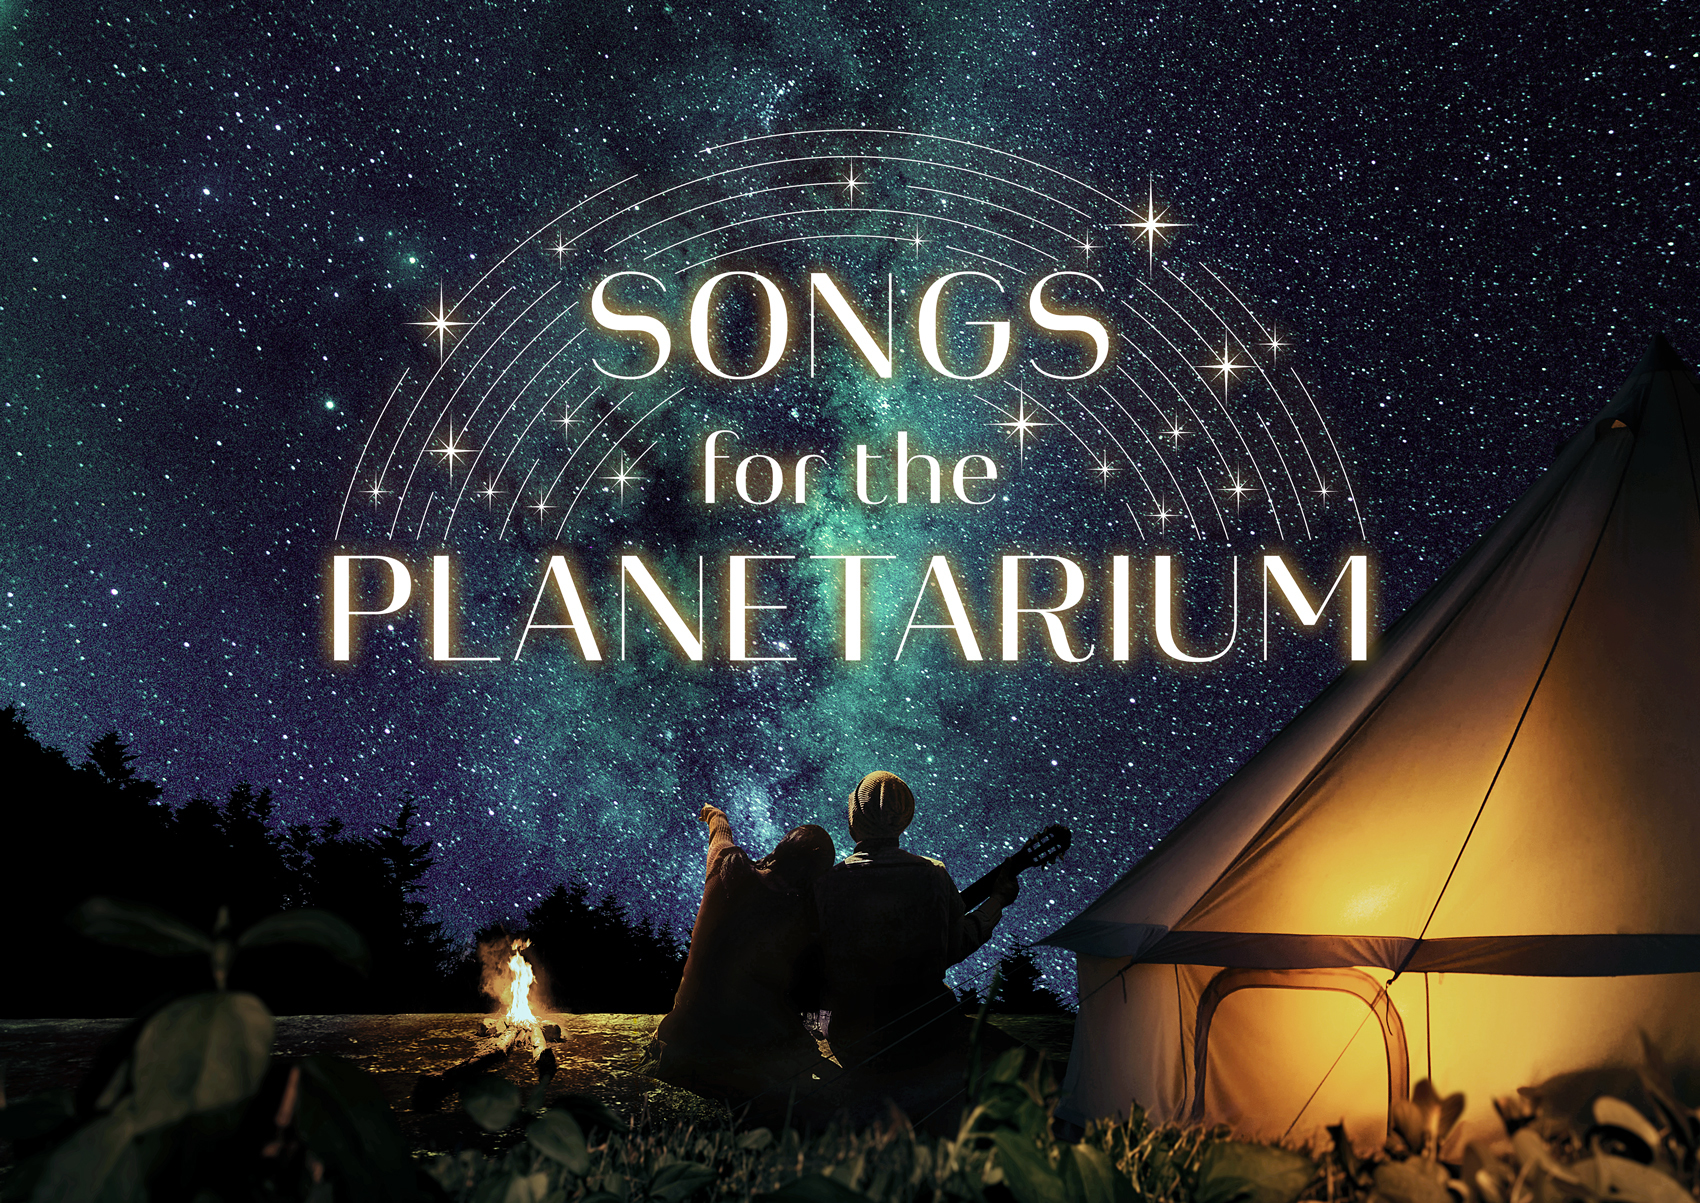 神谷 浩史のナビゲートで星空とともに名曲を紹介
「Songs for the Planetarium vol.1」
泣けるプラネタリウム、新シリーズ制作決定記念リバイバル上映